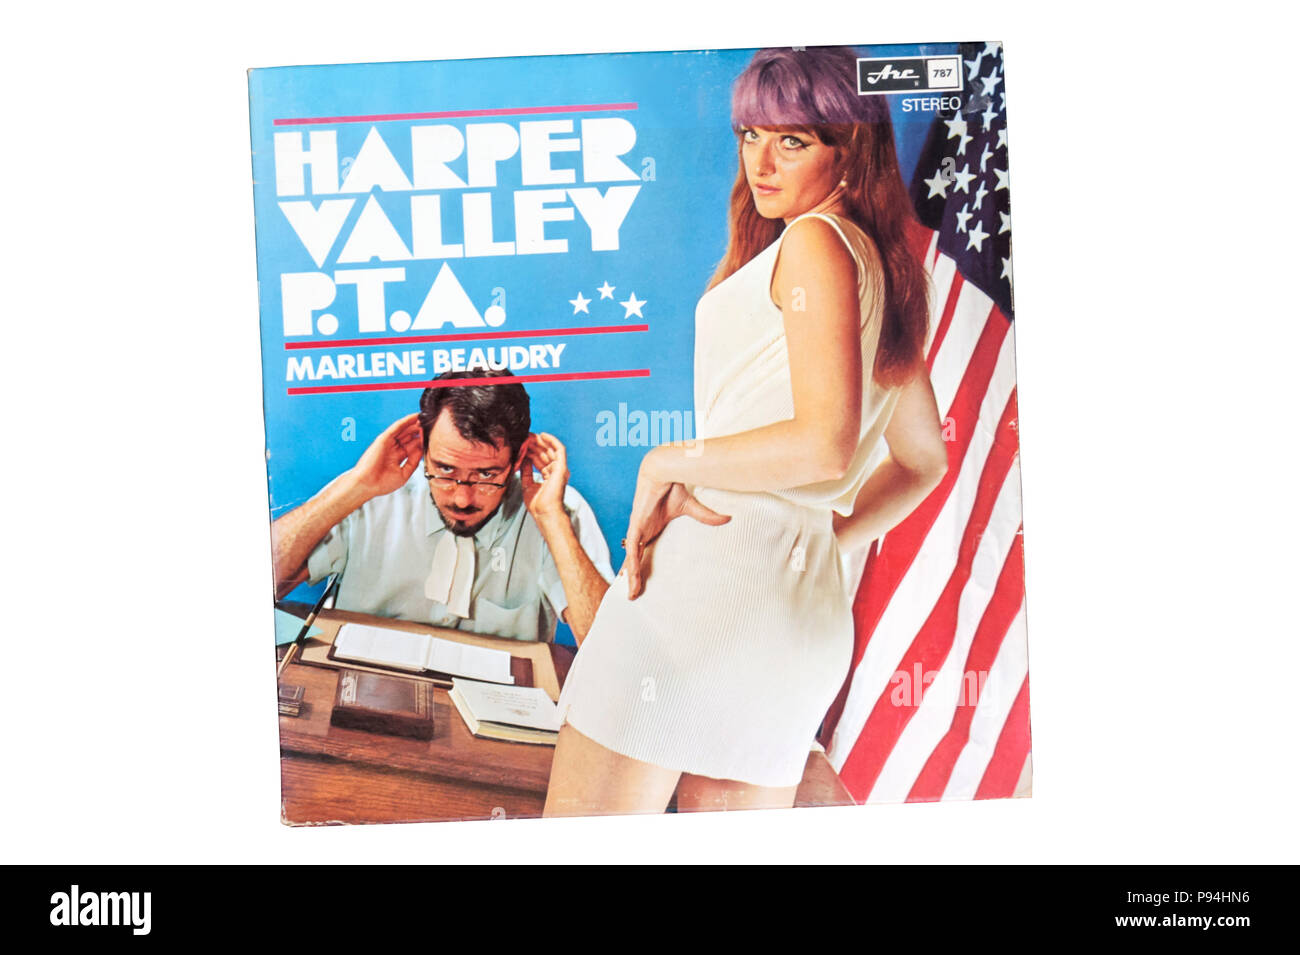 La versione originale di Harper Valley P.T.A. di Marlene Beaudry rilasciato nel 1968. Foto Stock